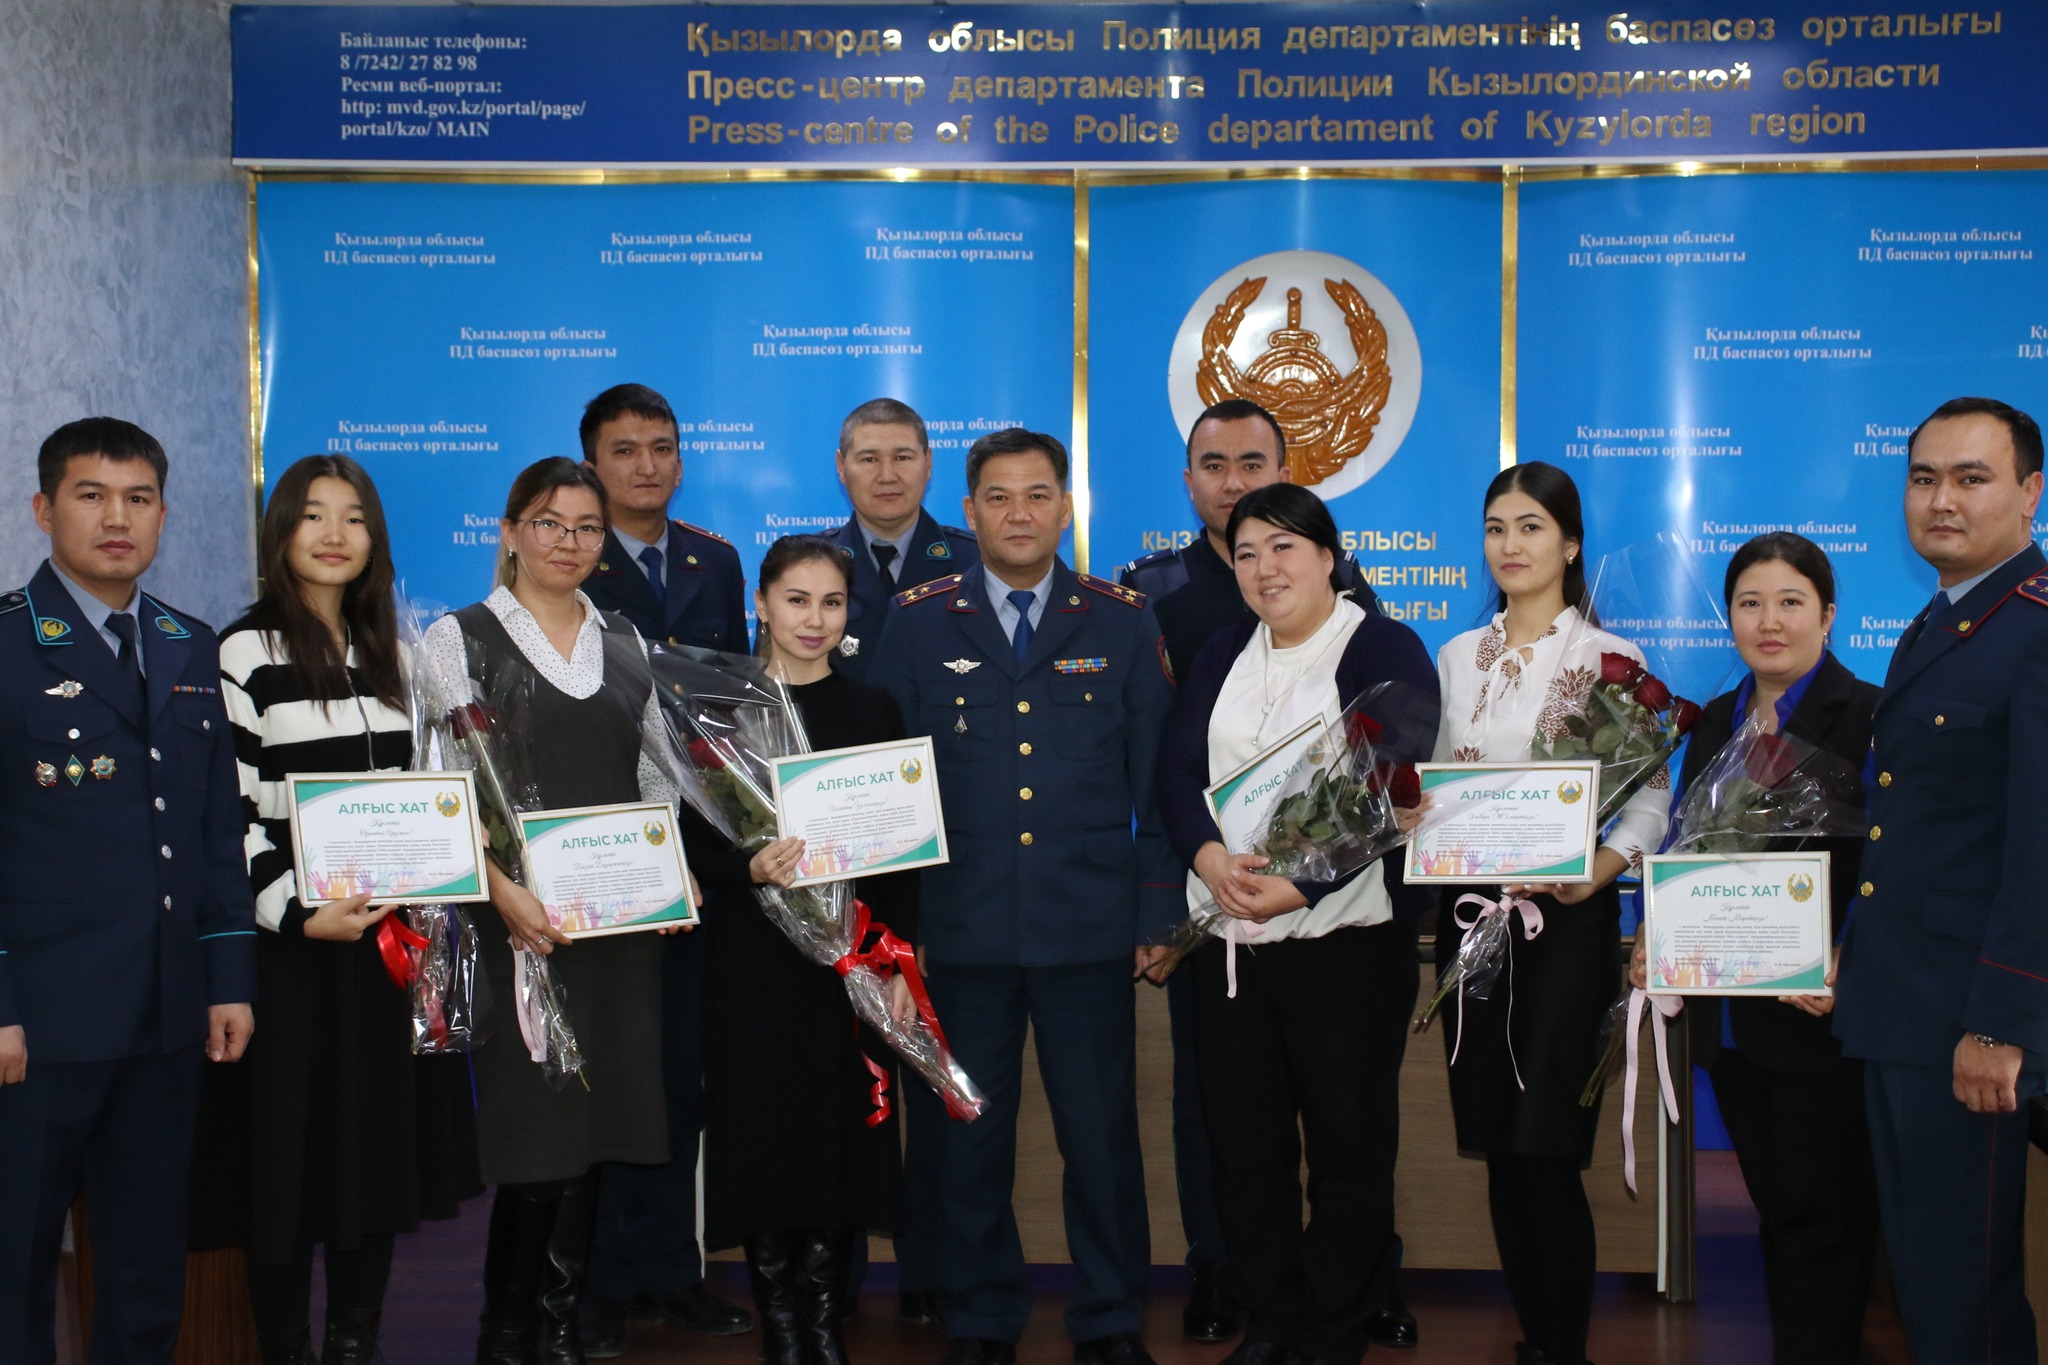 Руководство Департамента полиции Кызылординской области поощрило волонтеров